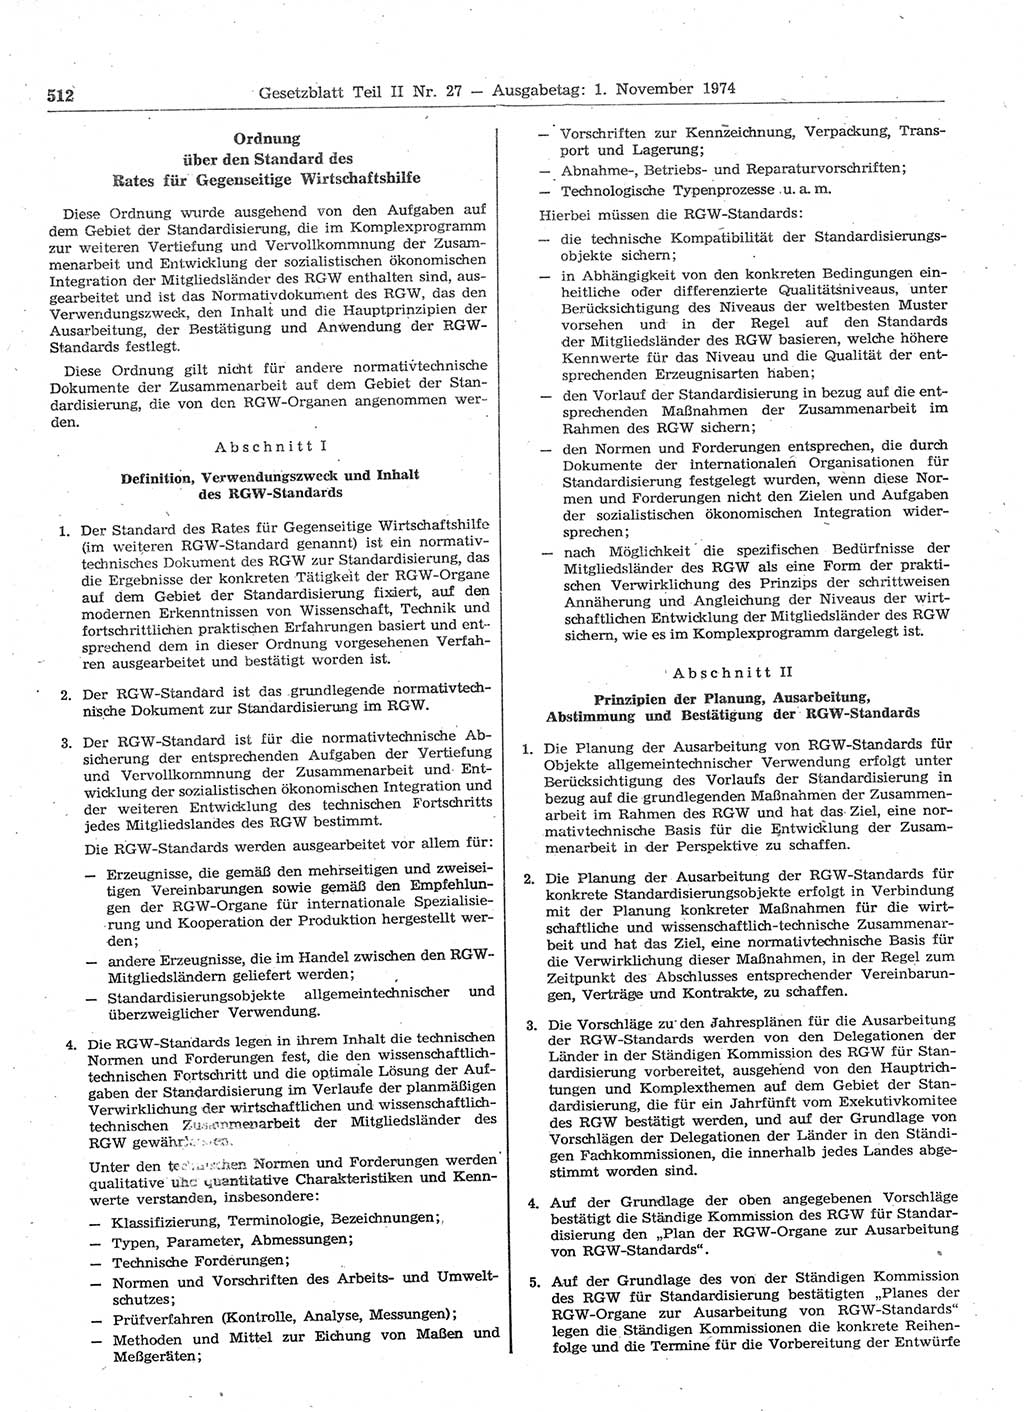 Gesetzblatt (GBl.) der Deutschen Demokratischen Republik (DDR) Teil ⅠⅠ 1974, Seite 512 (GBl. DDR ⅠⅠ 1974, S. 512)